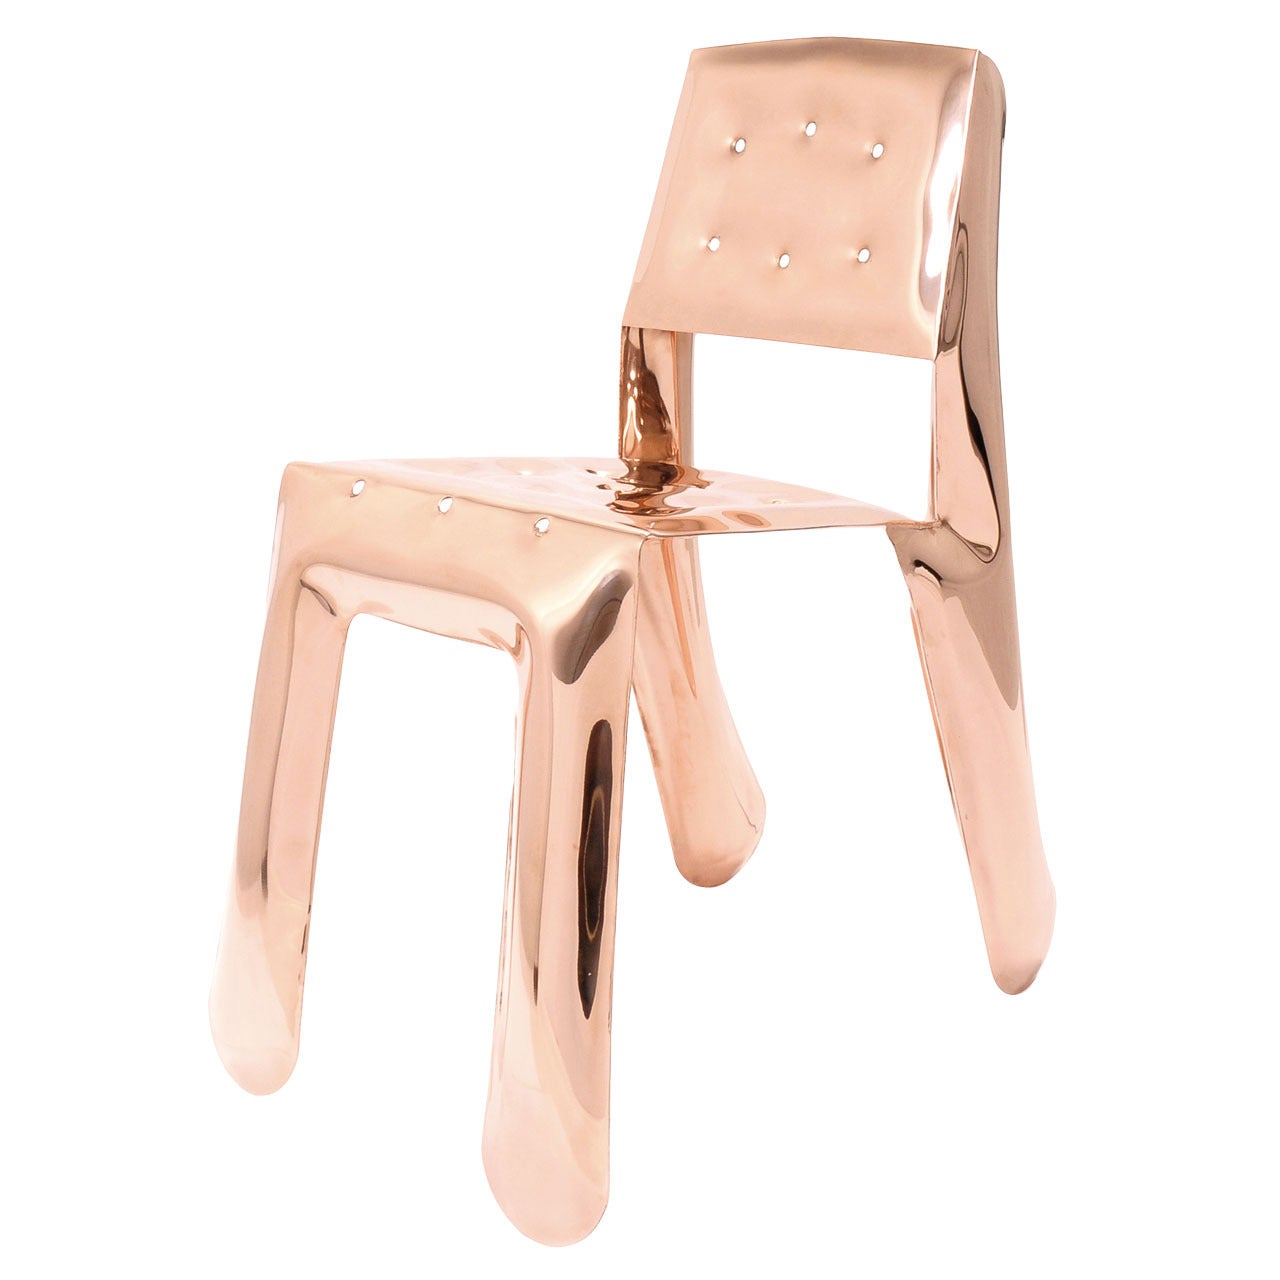 Chair by Oskar Zieta Named Chippensteel 0.5 For Sale